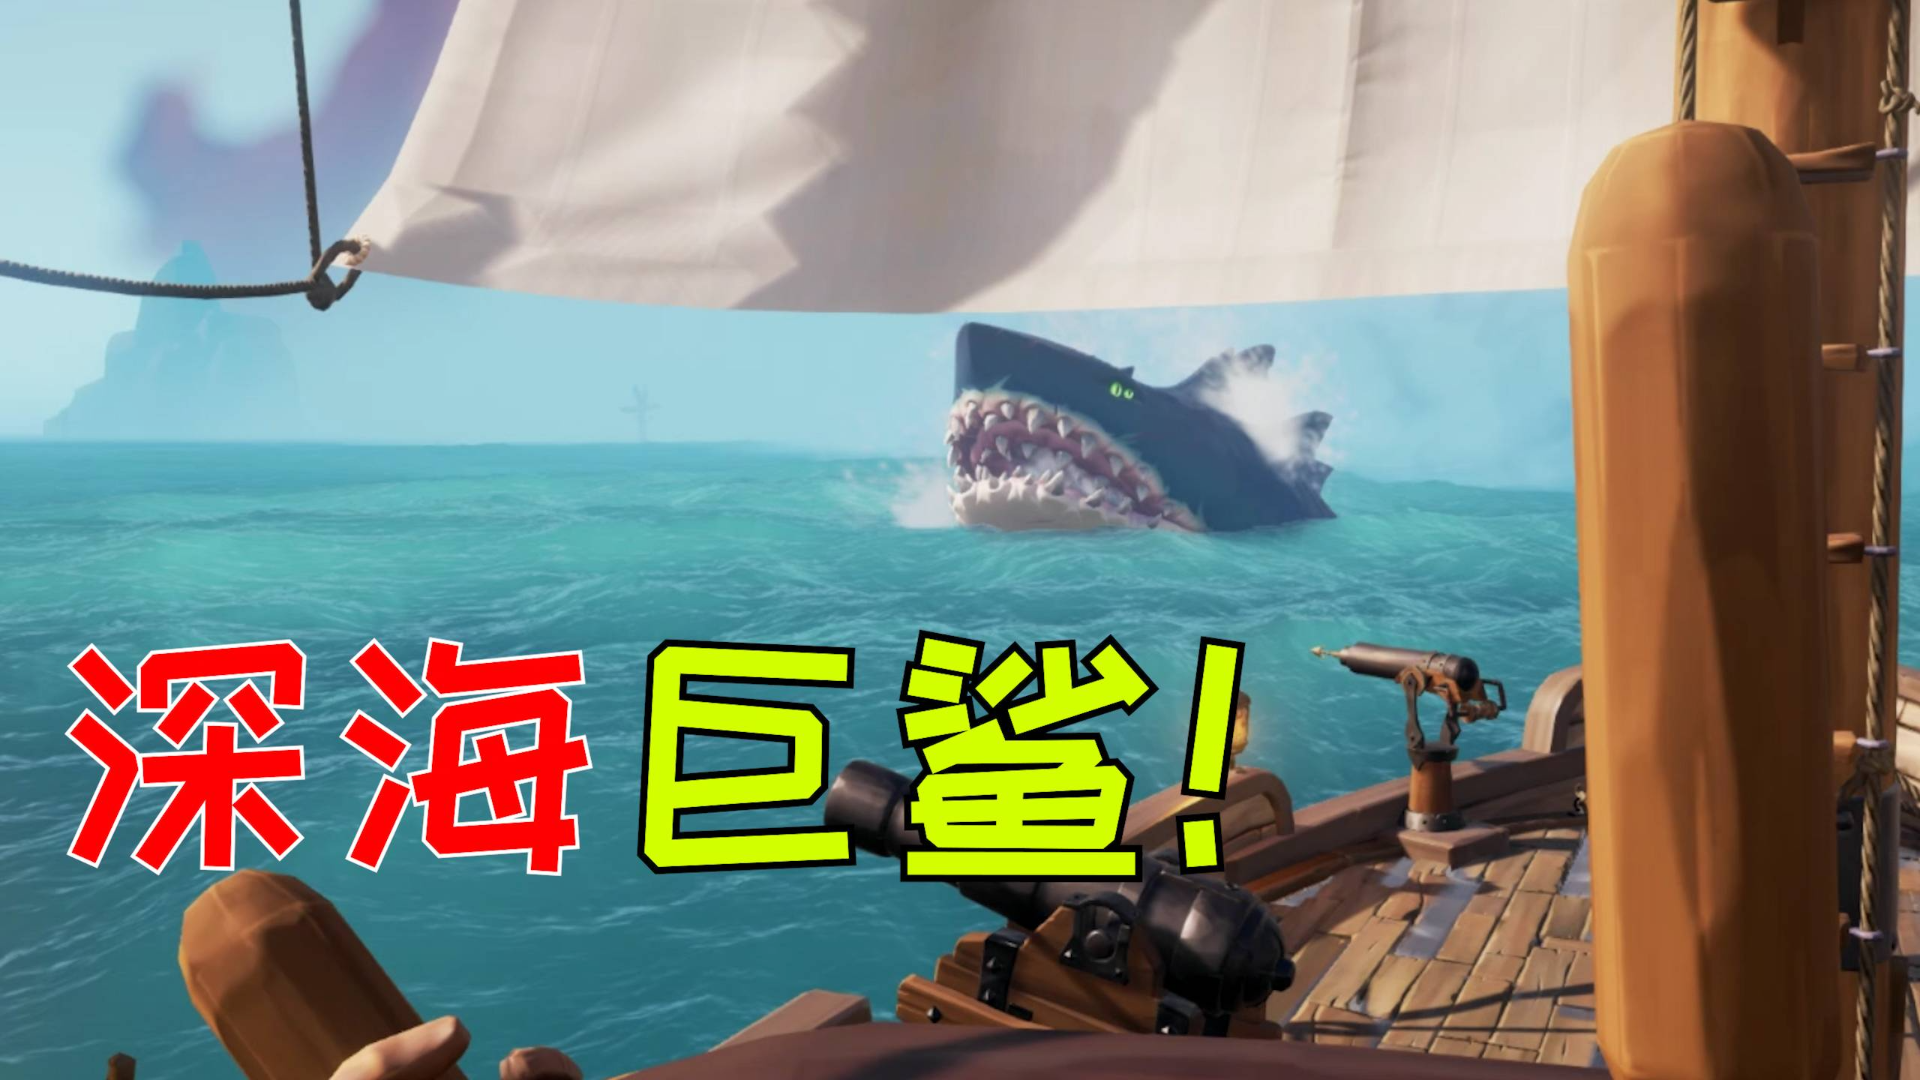 盗贼之海:我进入百慕大三角,遭遇了深海巨鲨,还有骷髅船